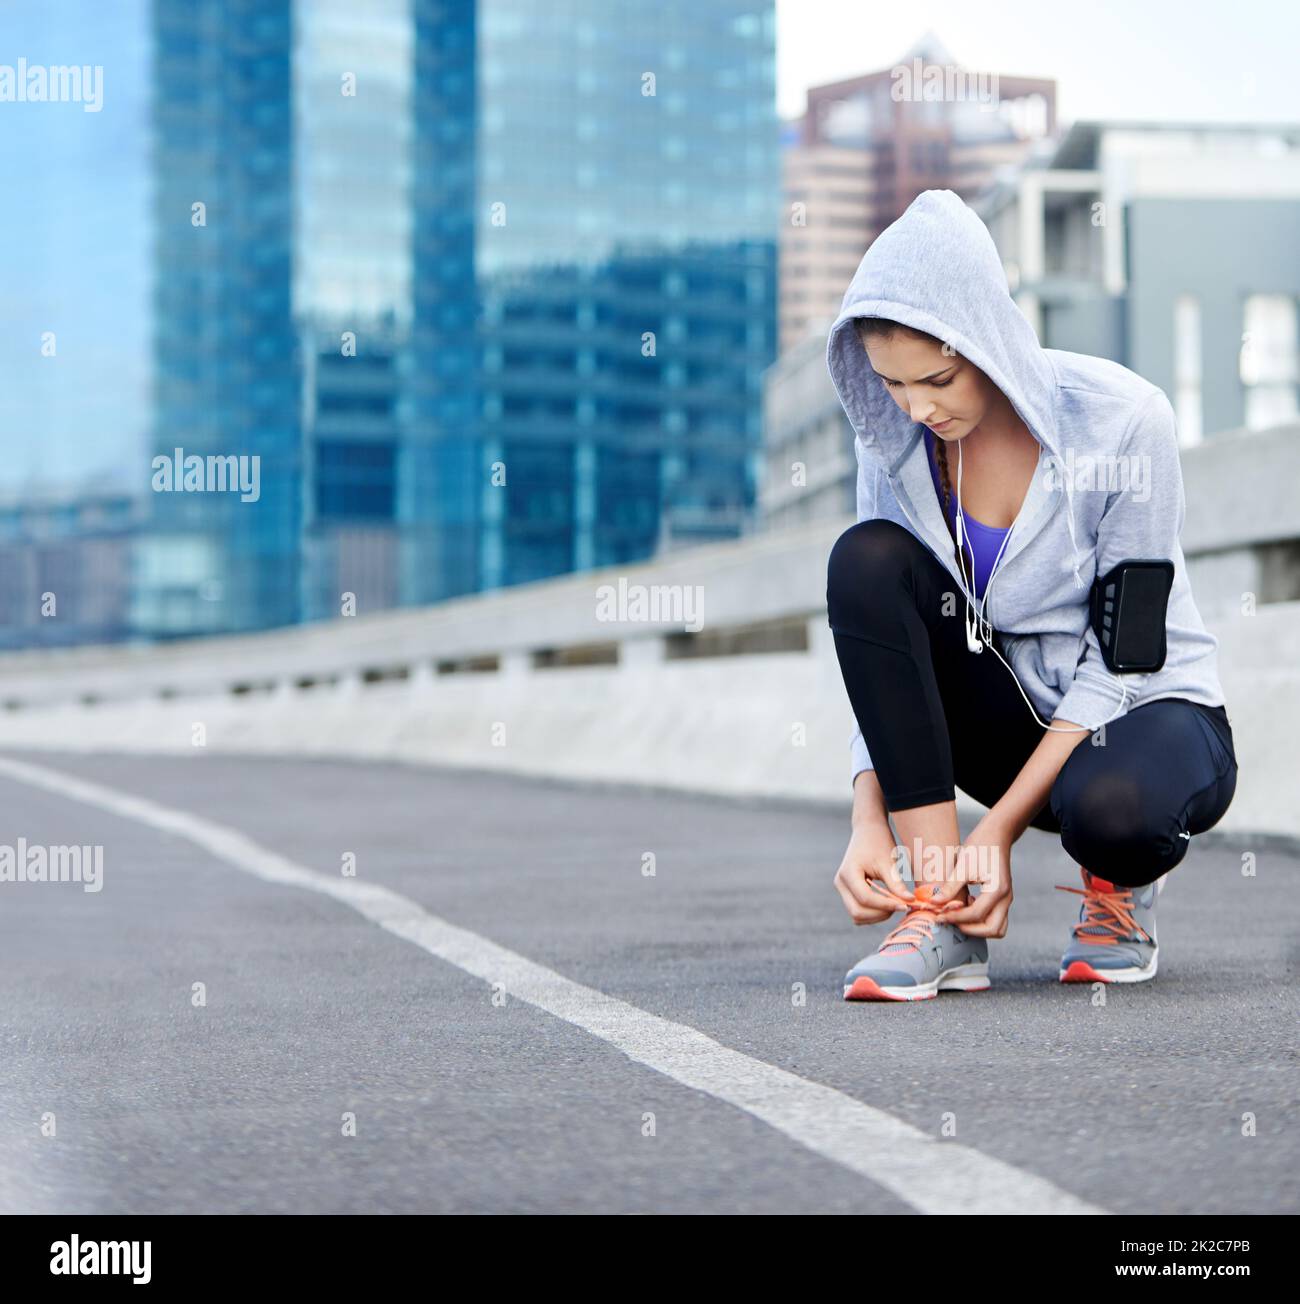 Fast Zeit für diese Füße zu bewegen. Aufnahme einer jungen Joggingin, die ihre Schuhe festschnürt, bevor sie durch die Stadt läuft. Stockfoto